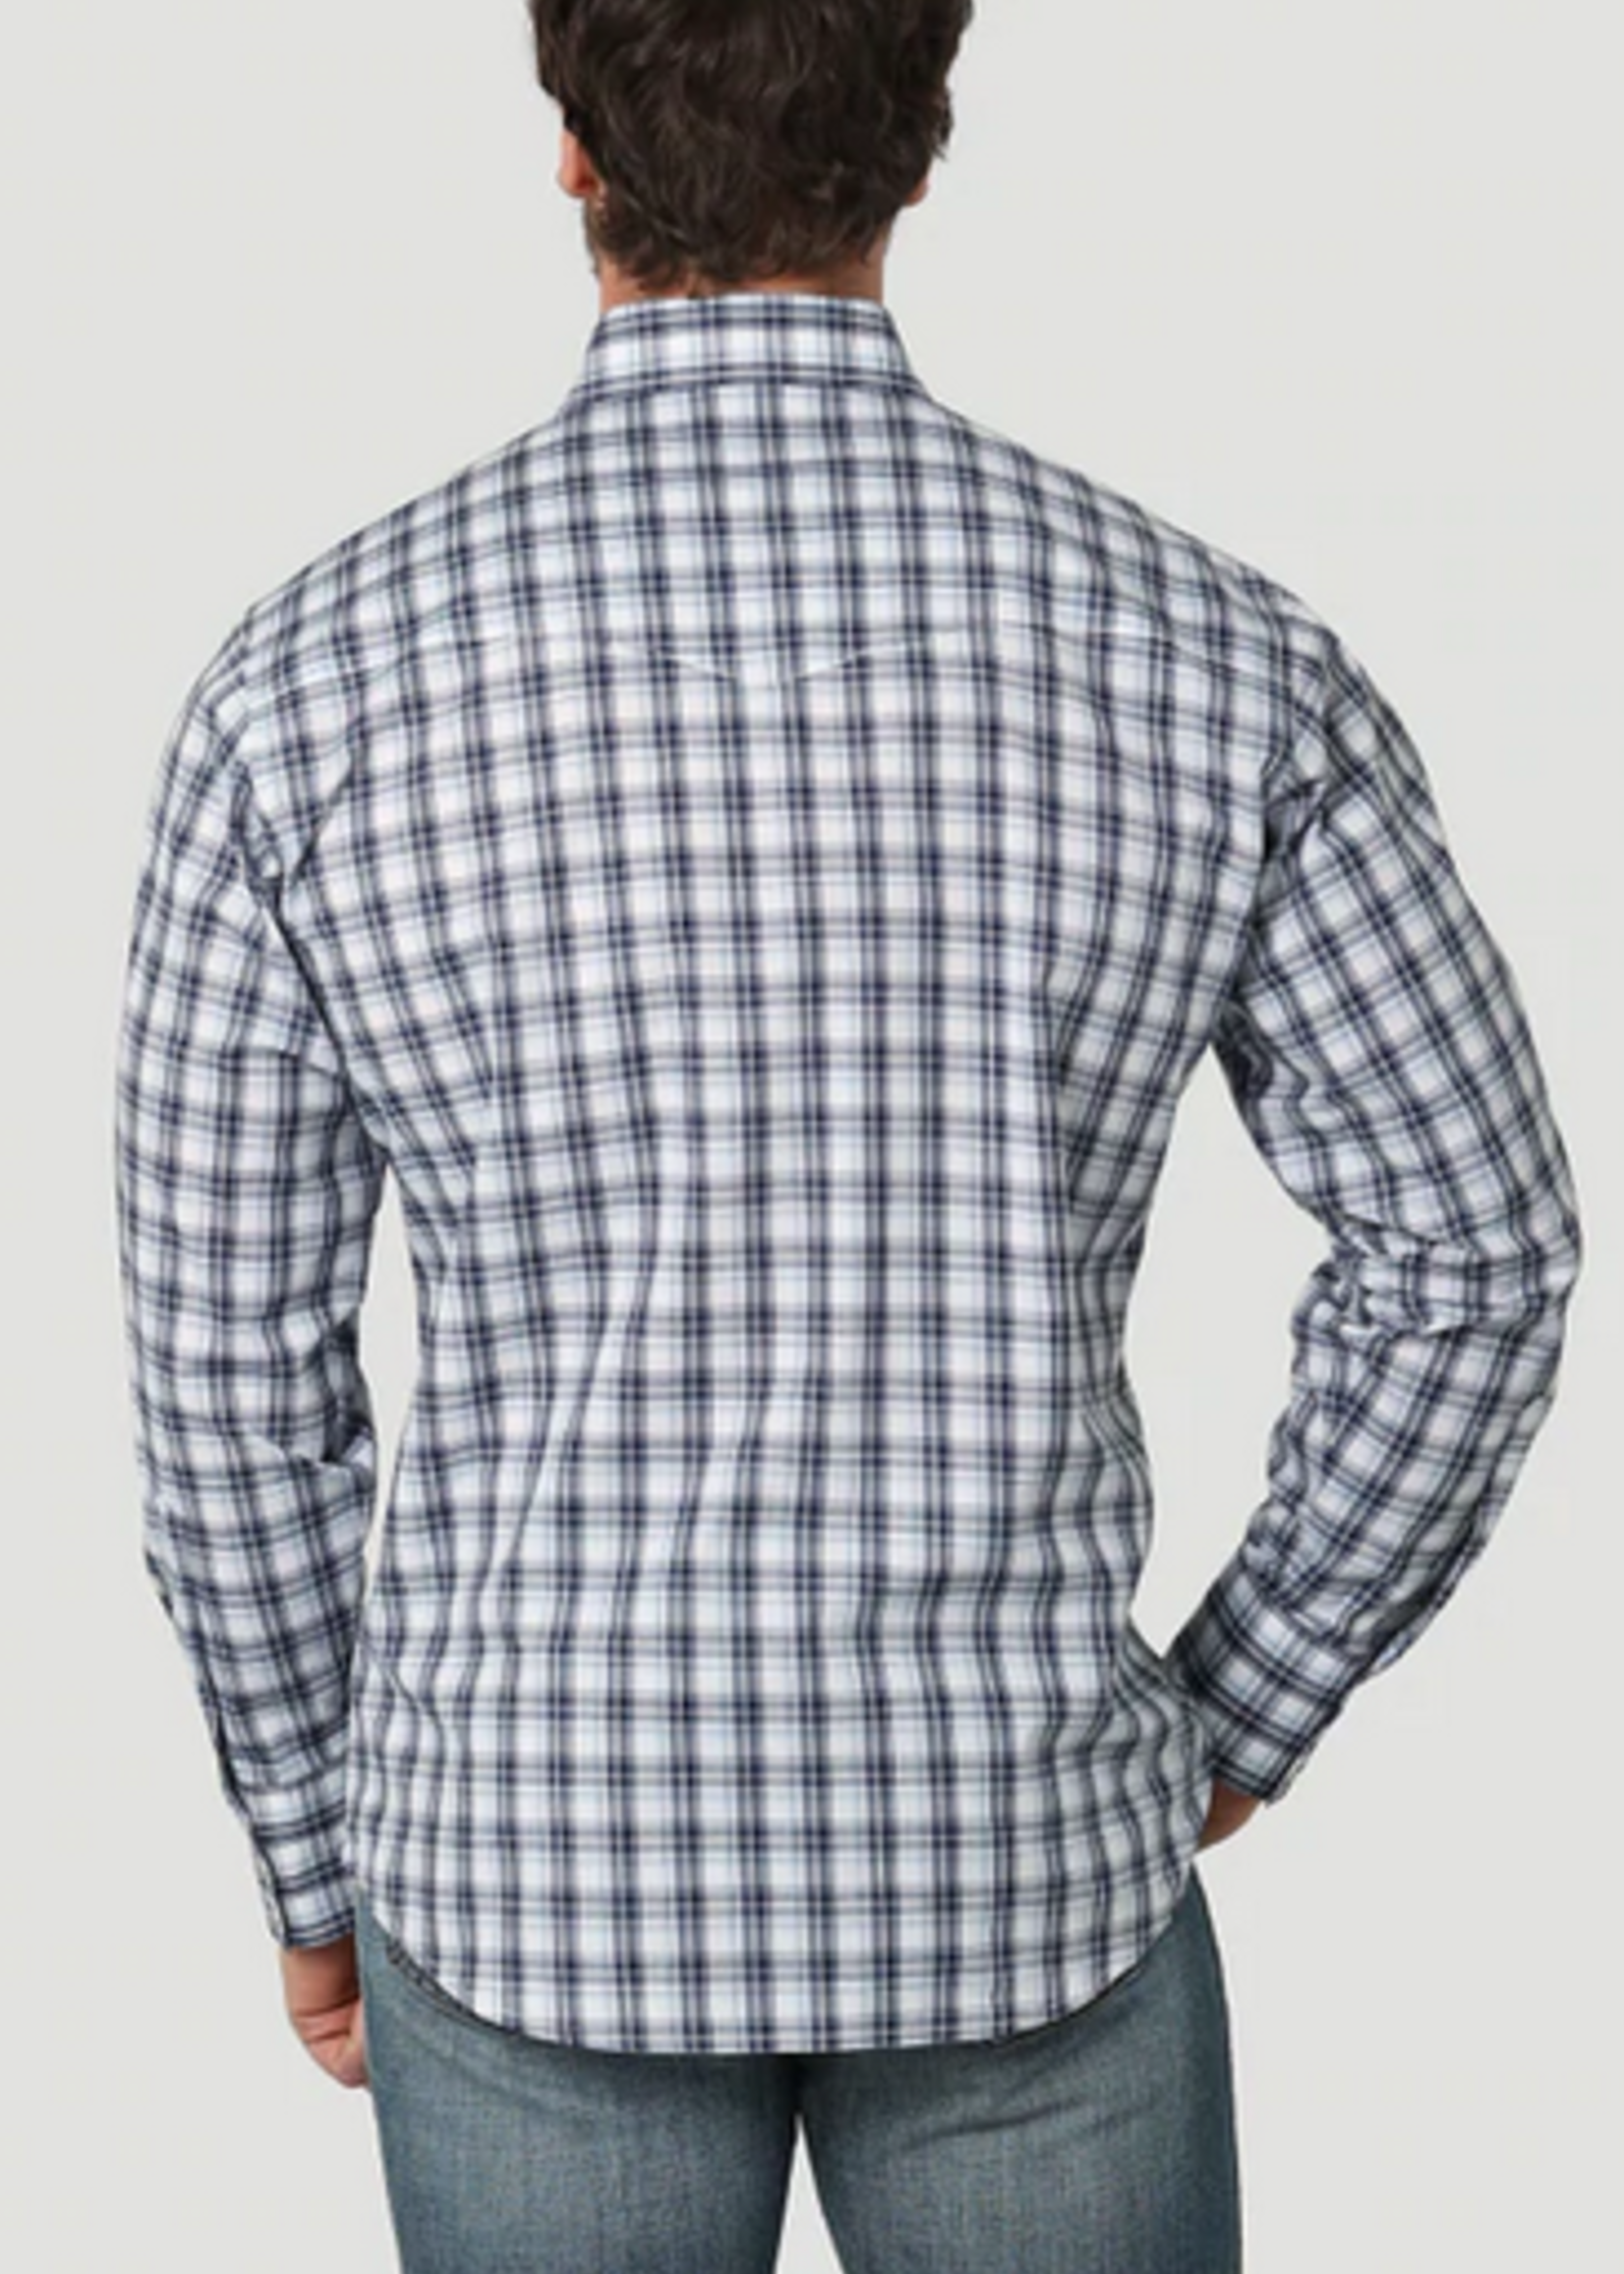 Wrangler Wrangler - Men's Wrinkle Resist Long Sleeve Shirt Relaxed Fit- 112314901